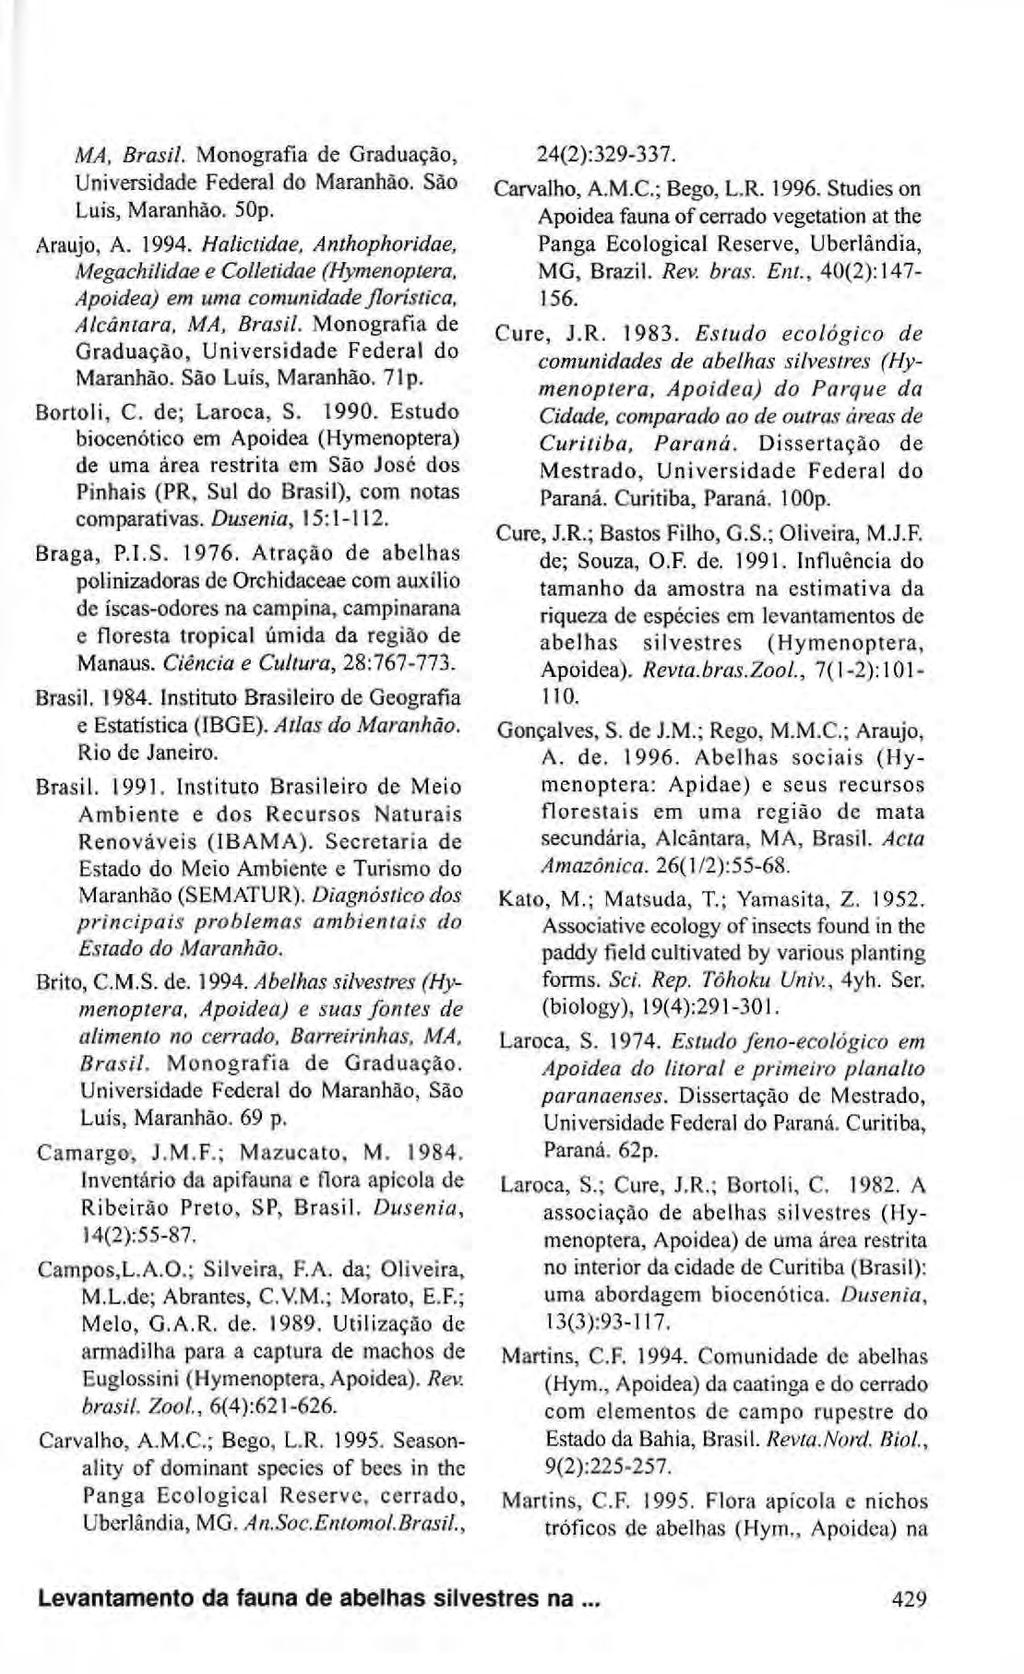 MA, Brasil. Monografia de Graduação, Universidade Federal do Maranhão. São Luís, Maranhão. 50p. Araújo, A. 1994.